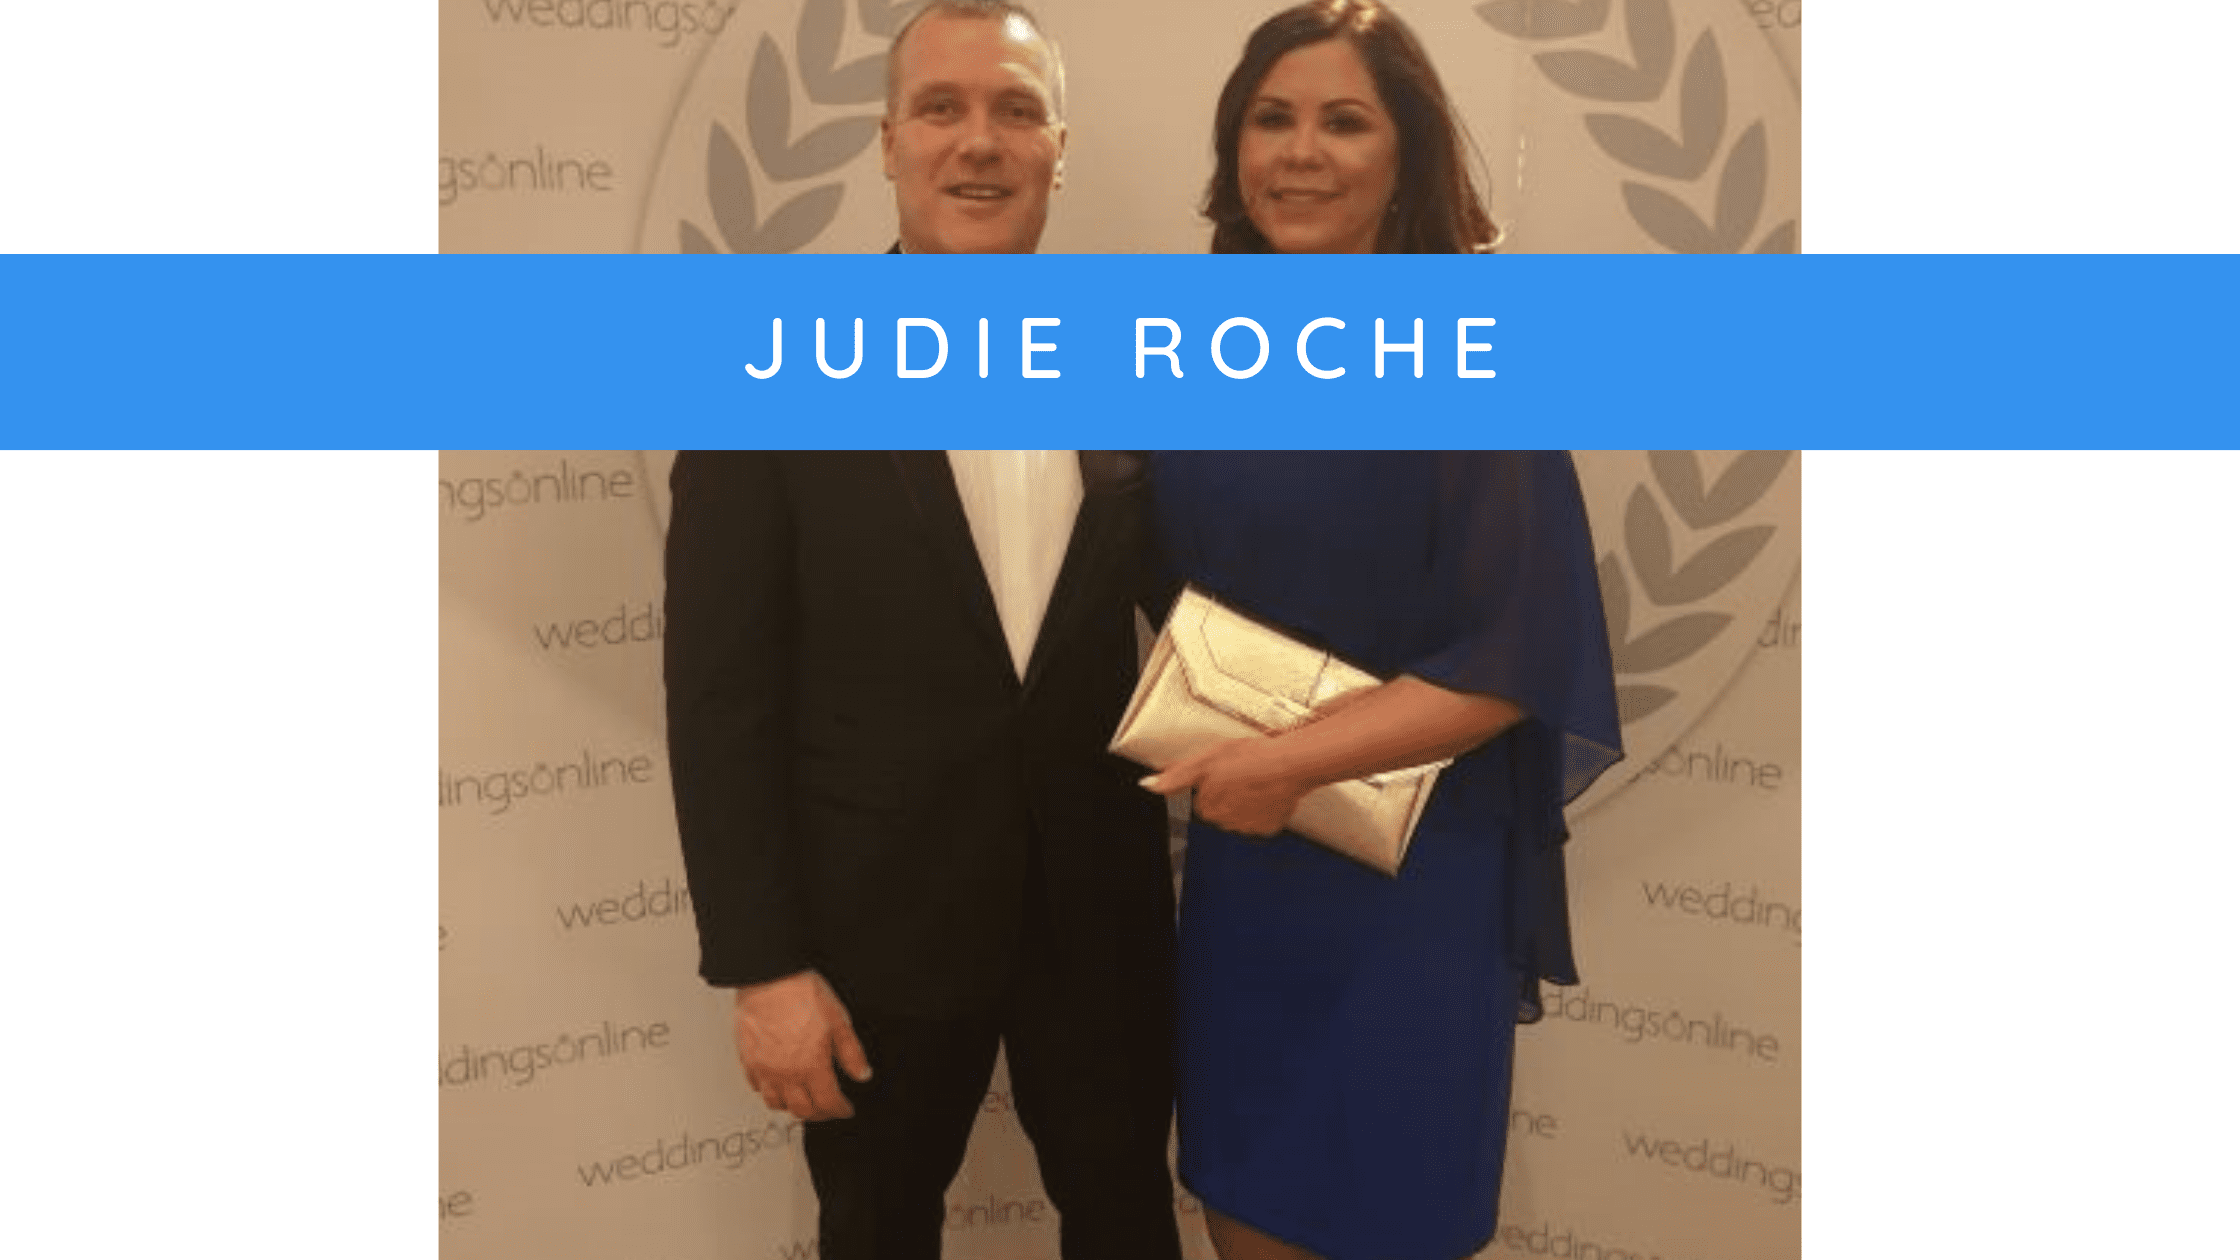 Judie Roche